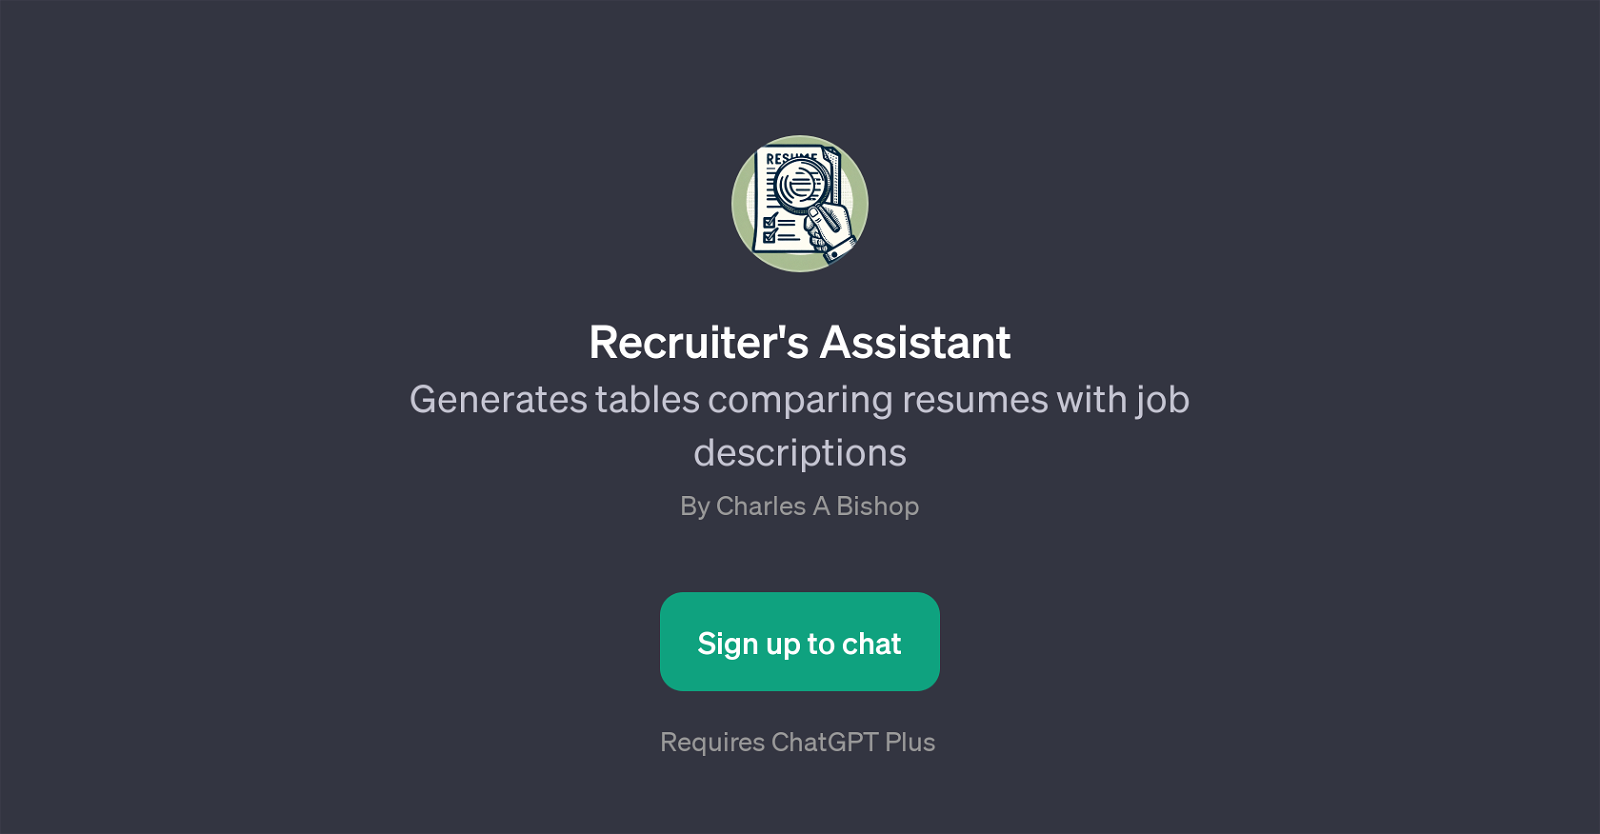 Recruiter's Assistant website